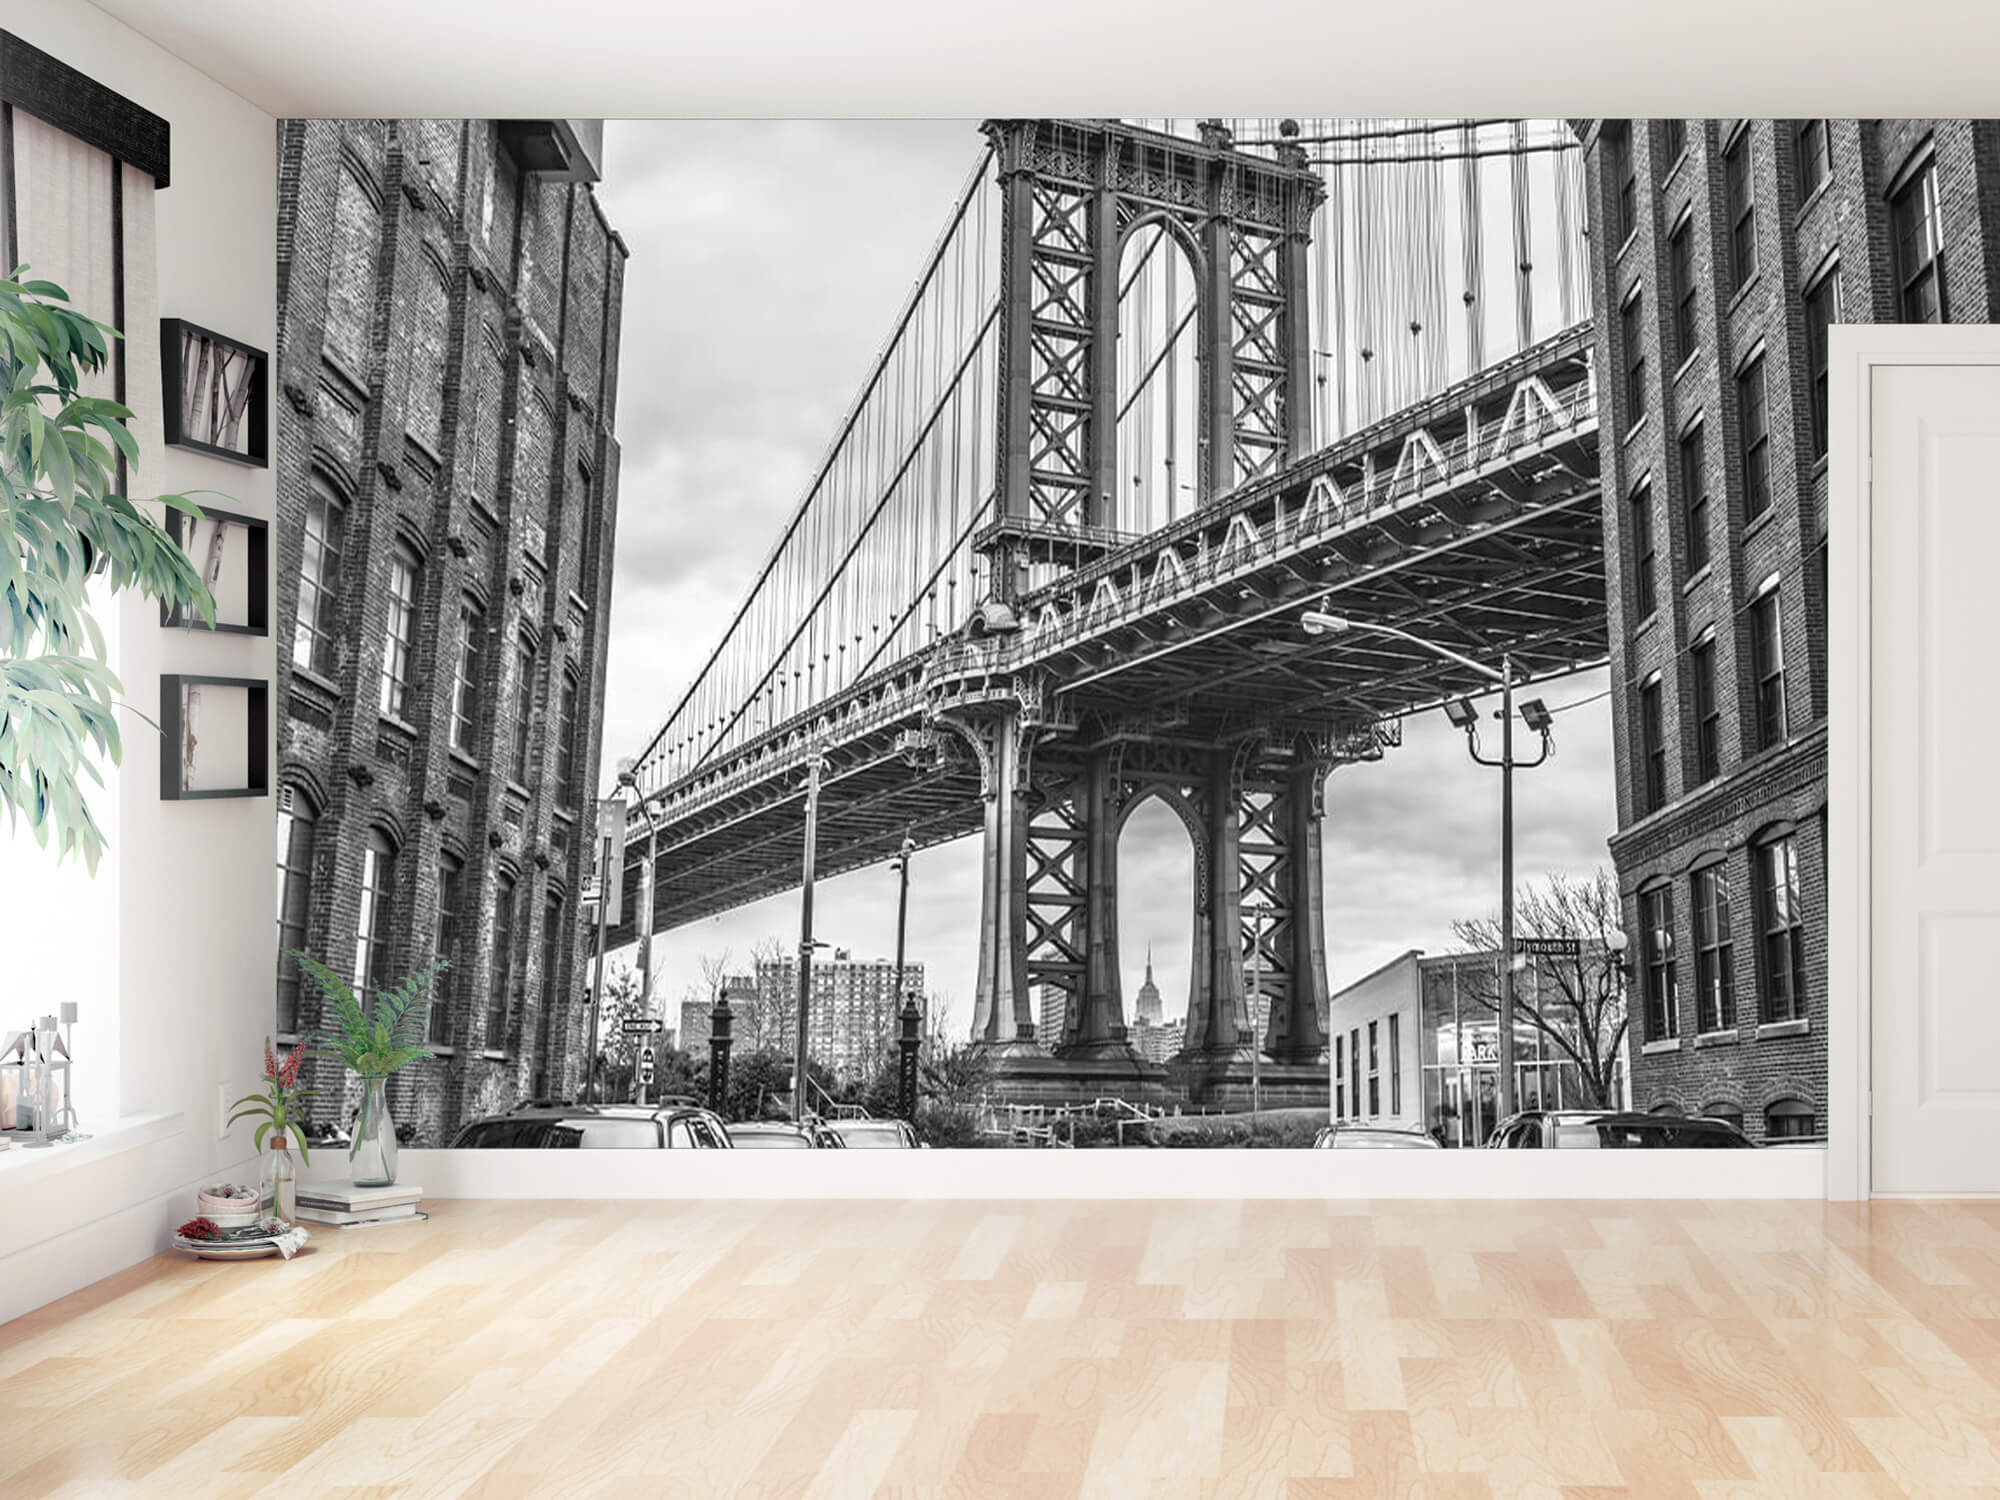  Papel pintado con Puente de Manhattan - Salón 11